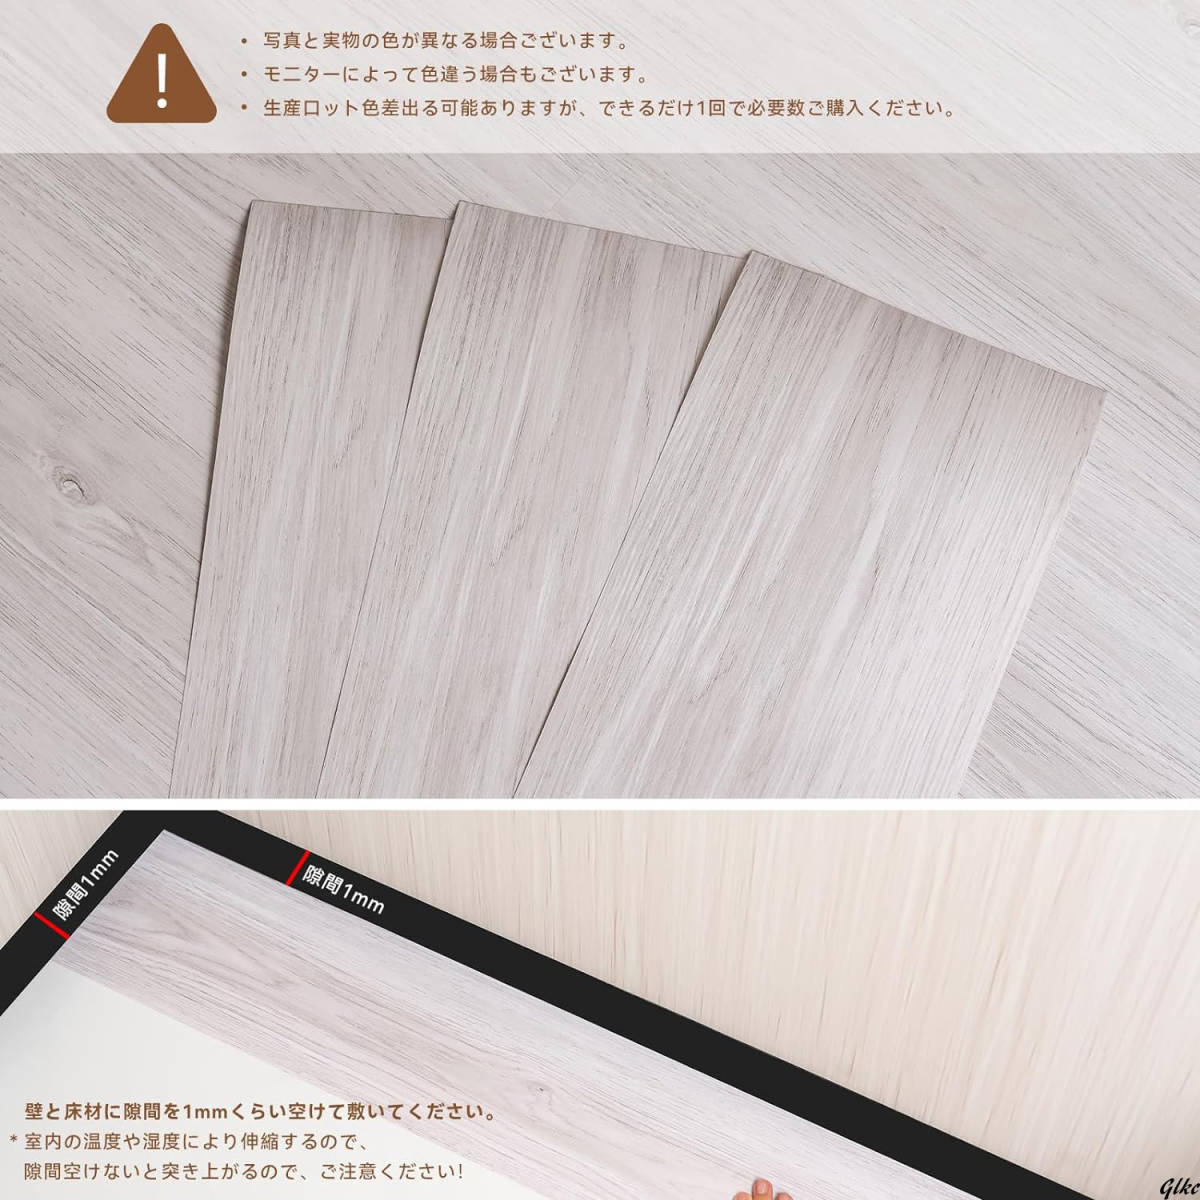 フロアタイル 3畳分 36枚セット リメイクシート 木目 貼るだけ 床リフォーム DIY リノベーション フローリングシート はがせる